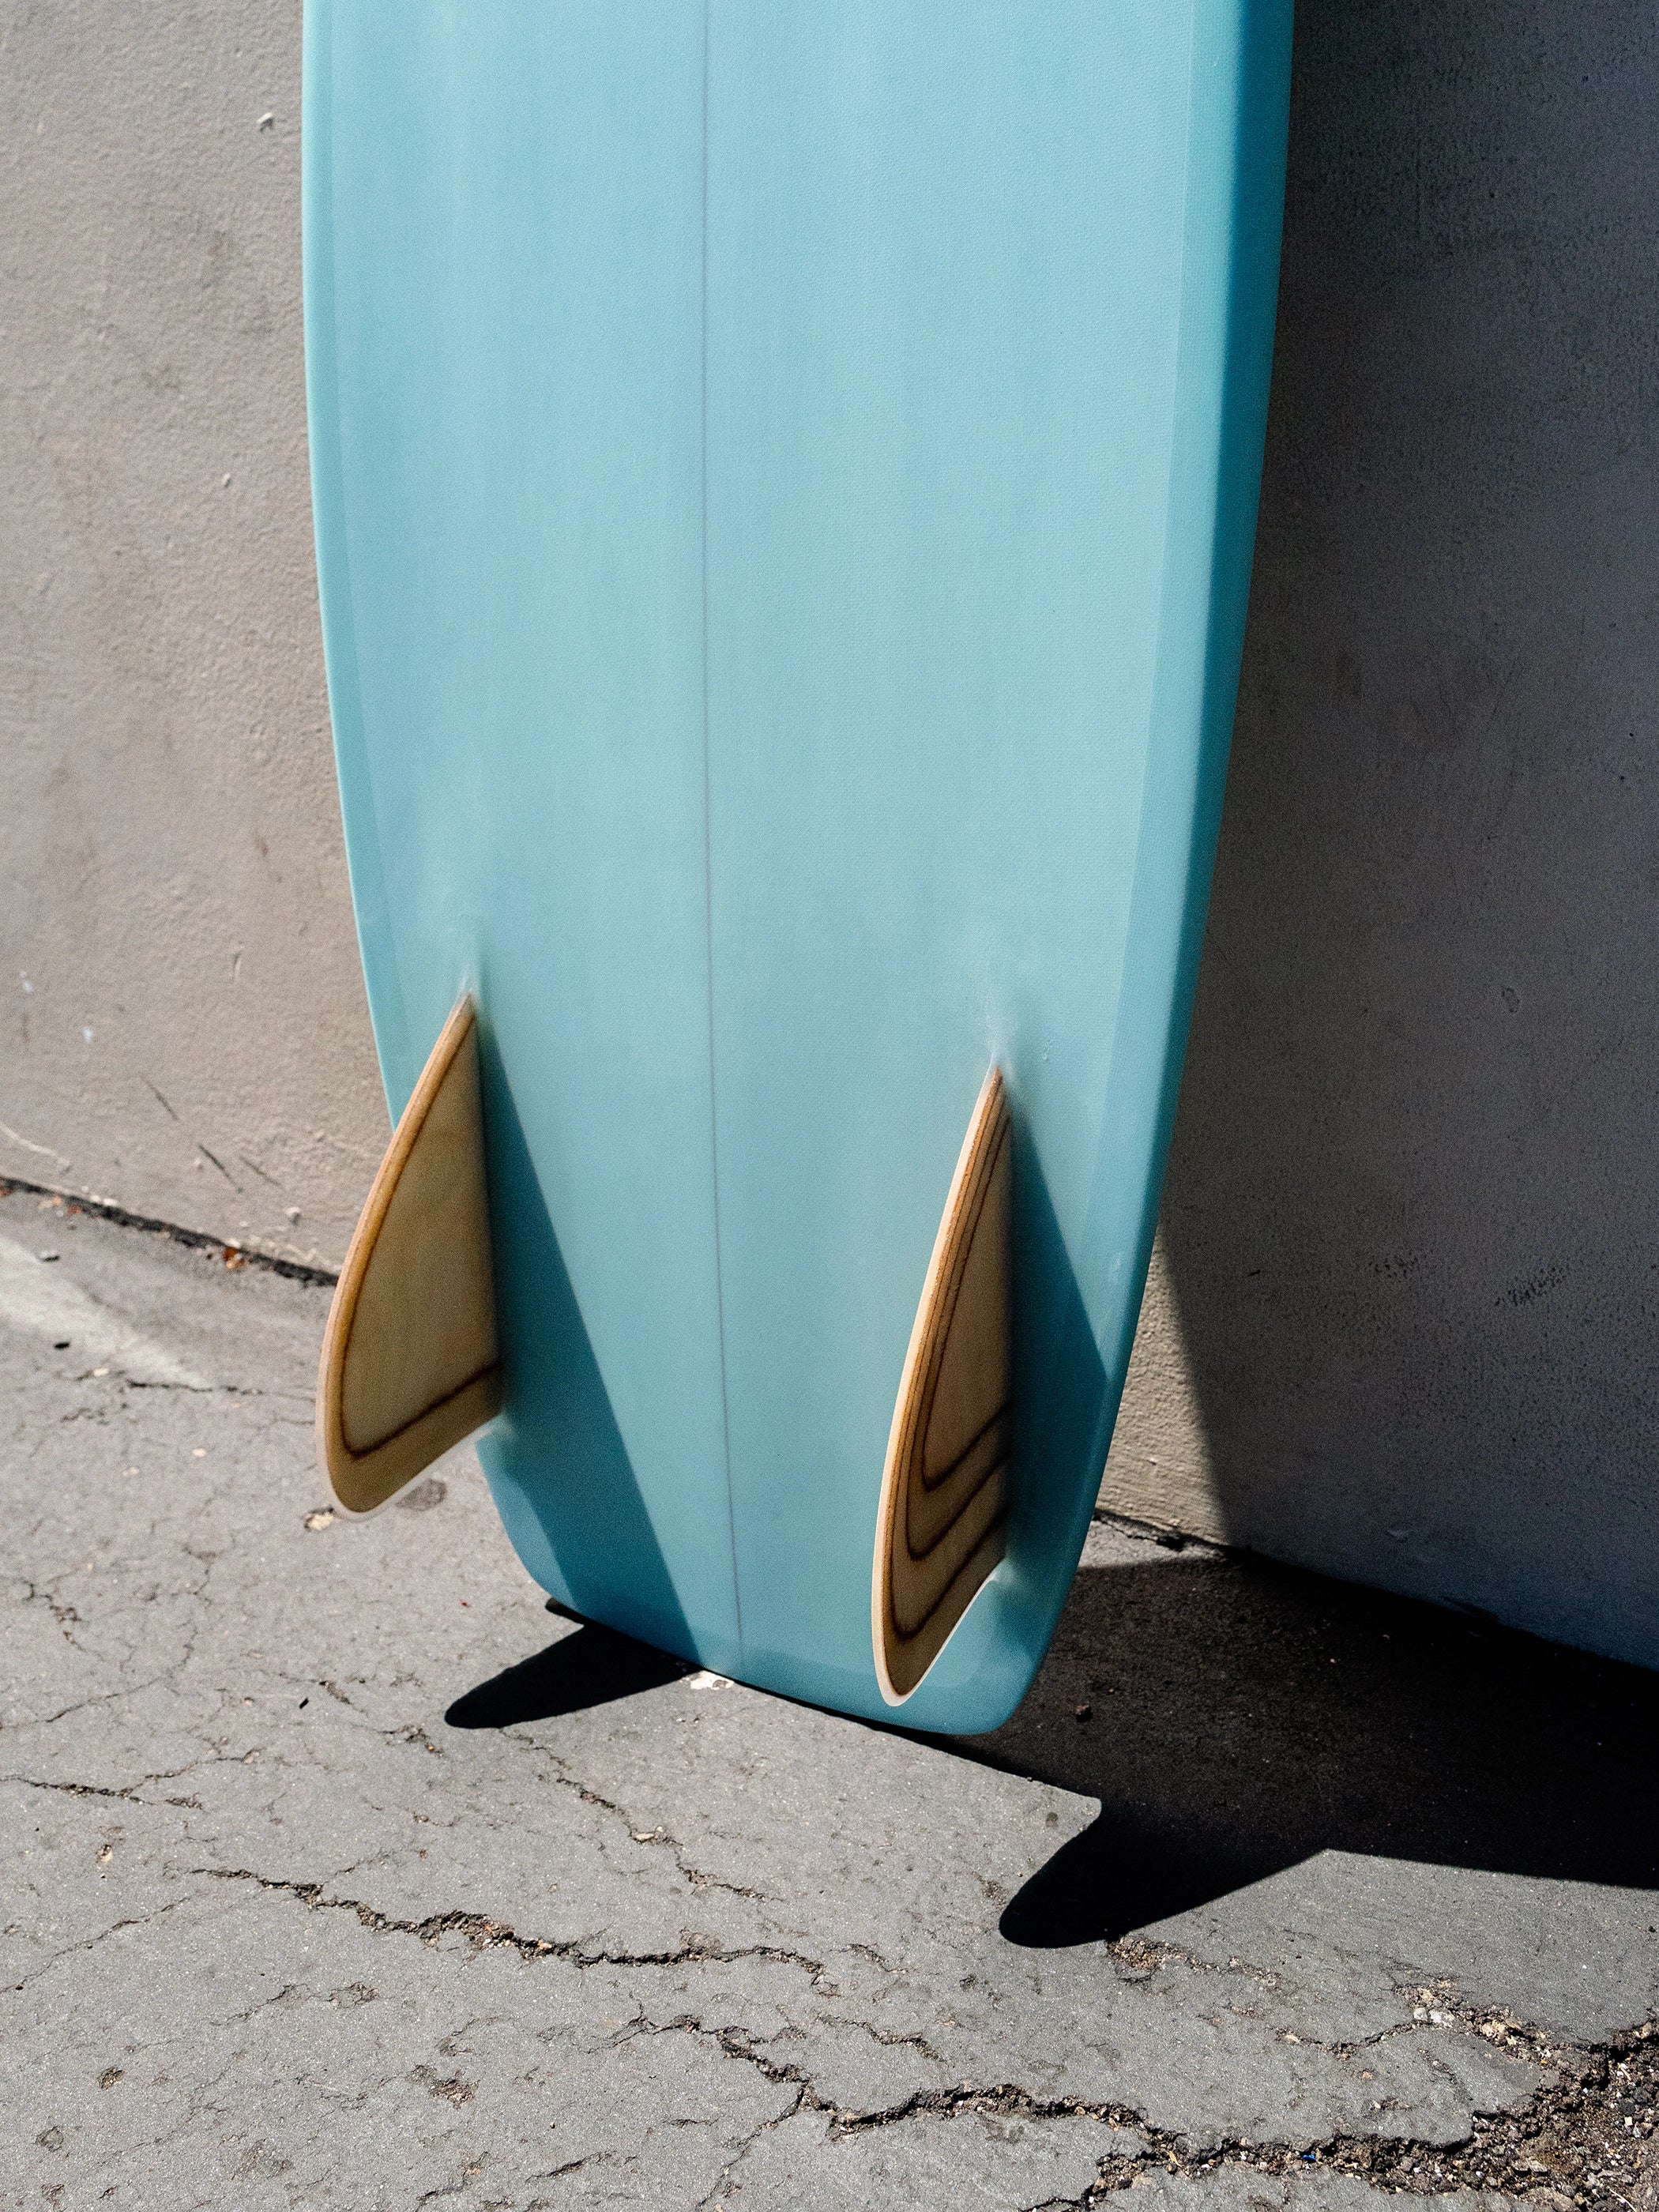 Tyler Warren | 5’0” Bar of Soap Sky Blue Surfboard